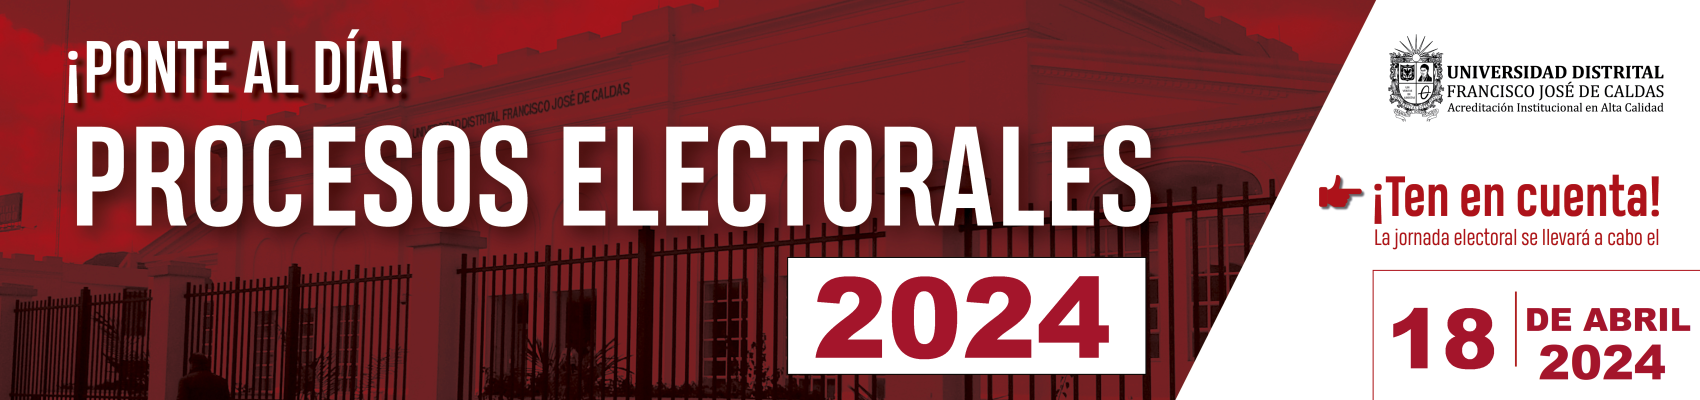 Procesos electorales 2024